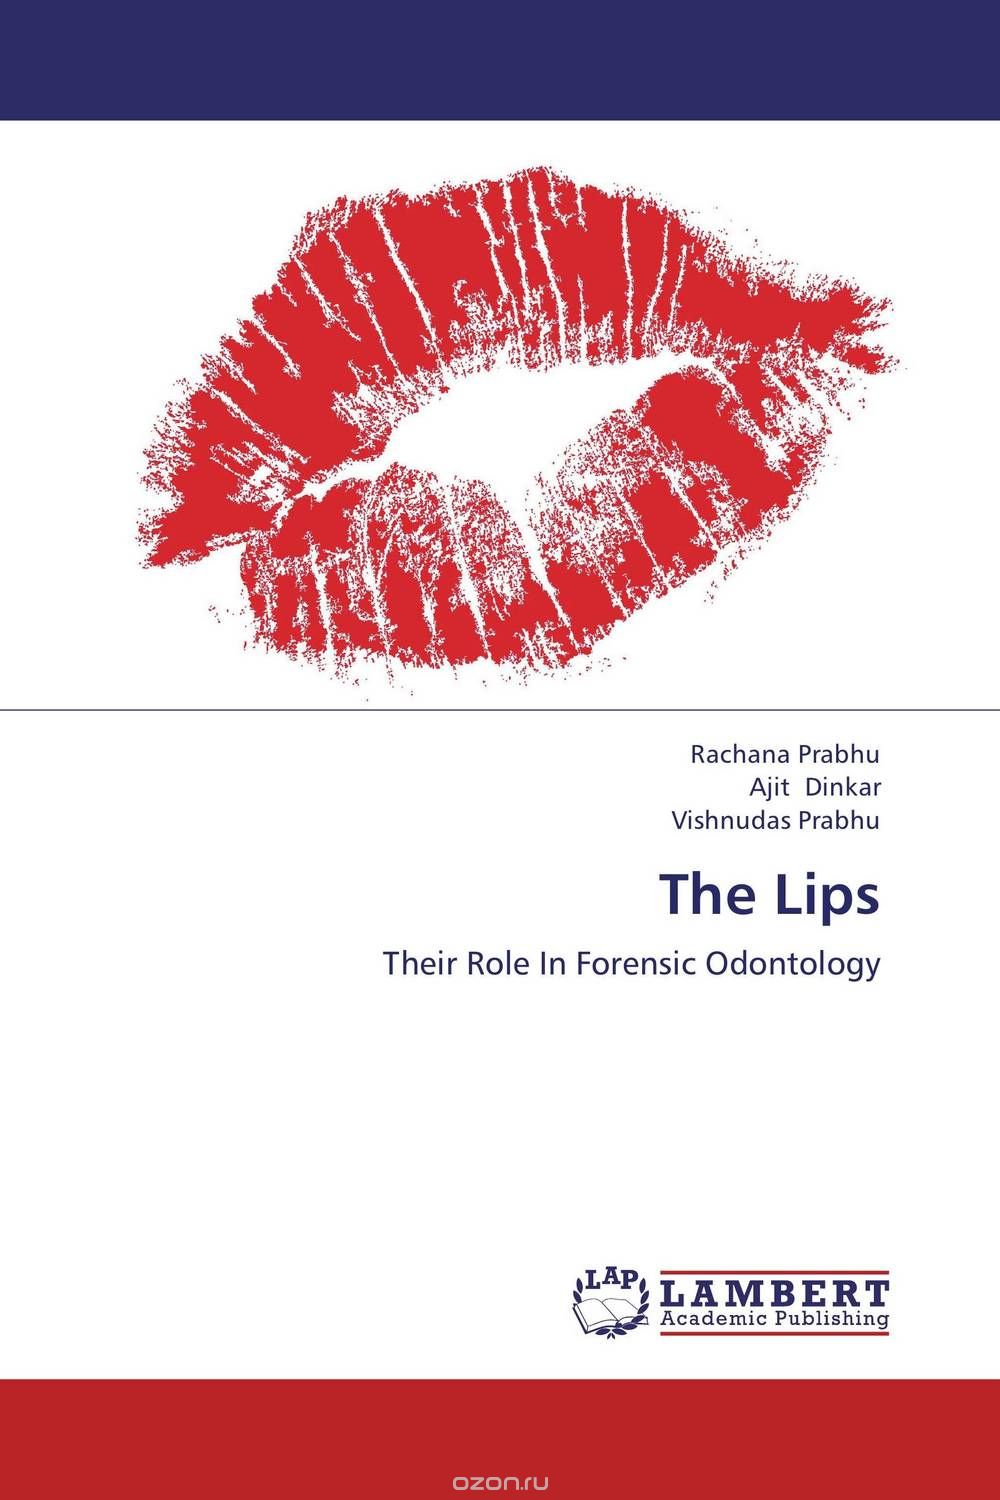 Скачать книгу "The Lips"